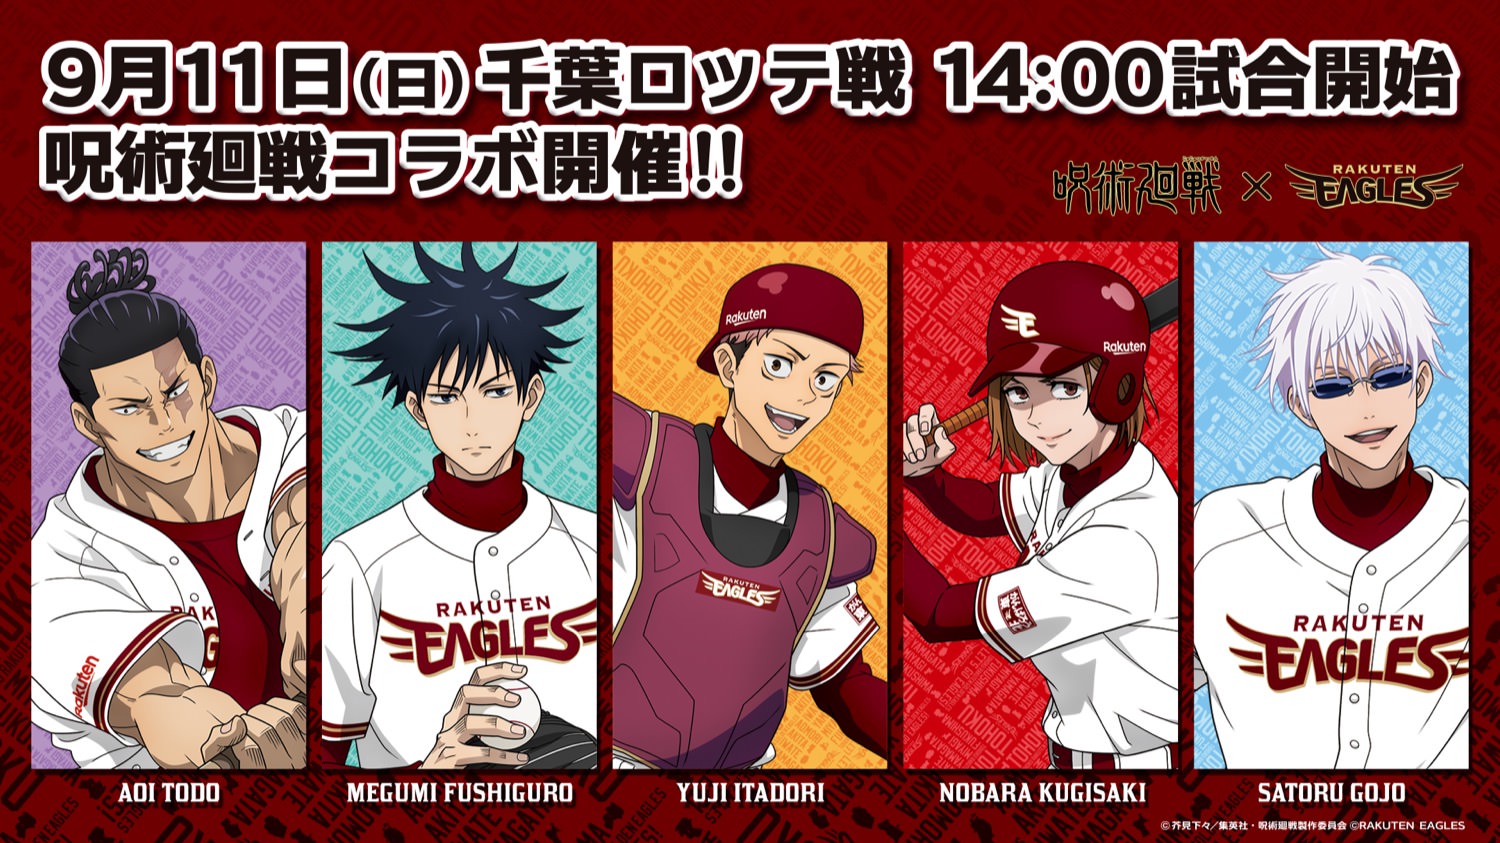 呪術廻戦 × 楽天イーグルス 9月11日にプロ野球コラボイベント開催!